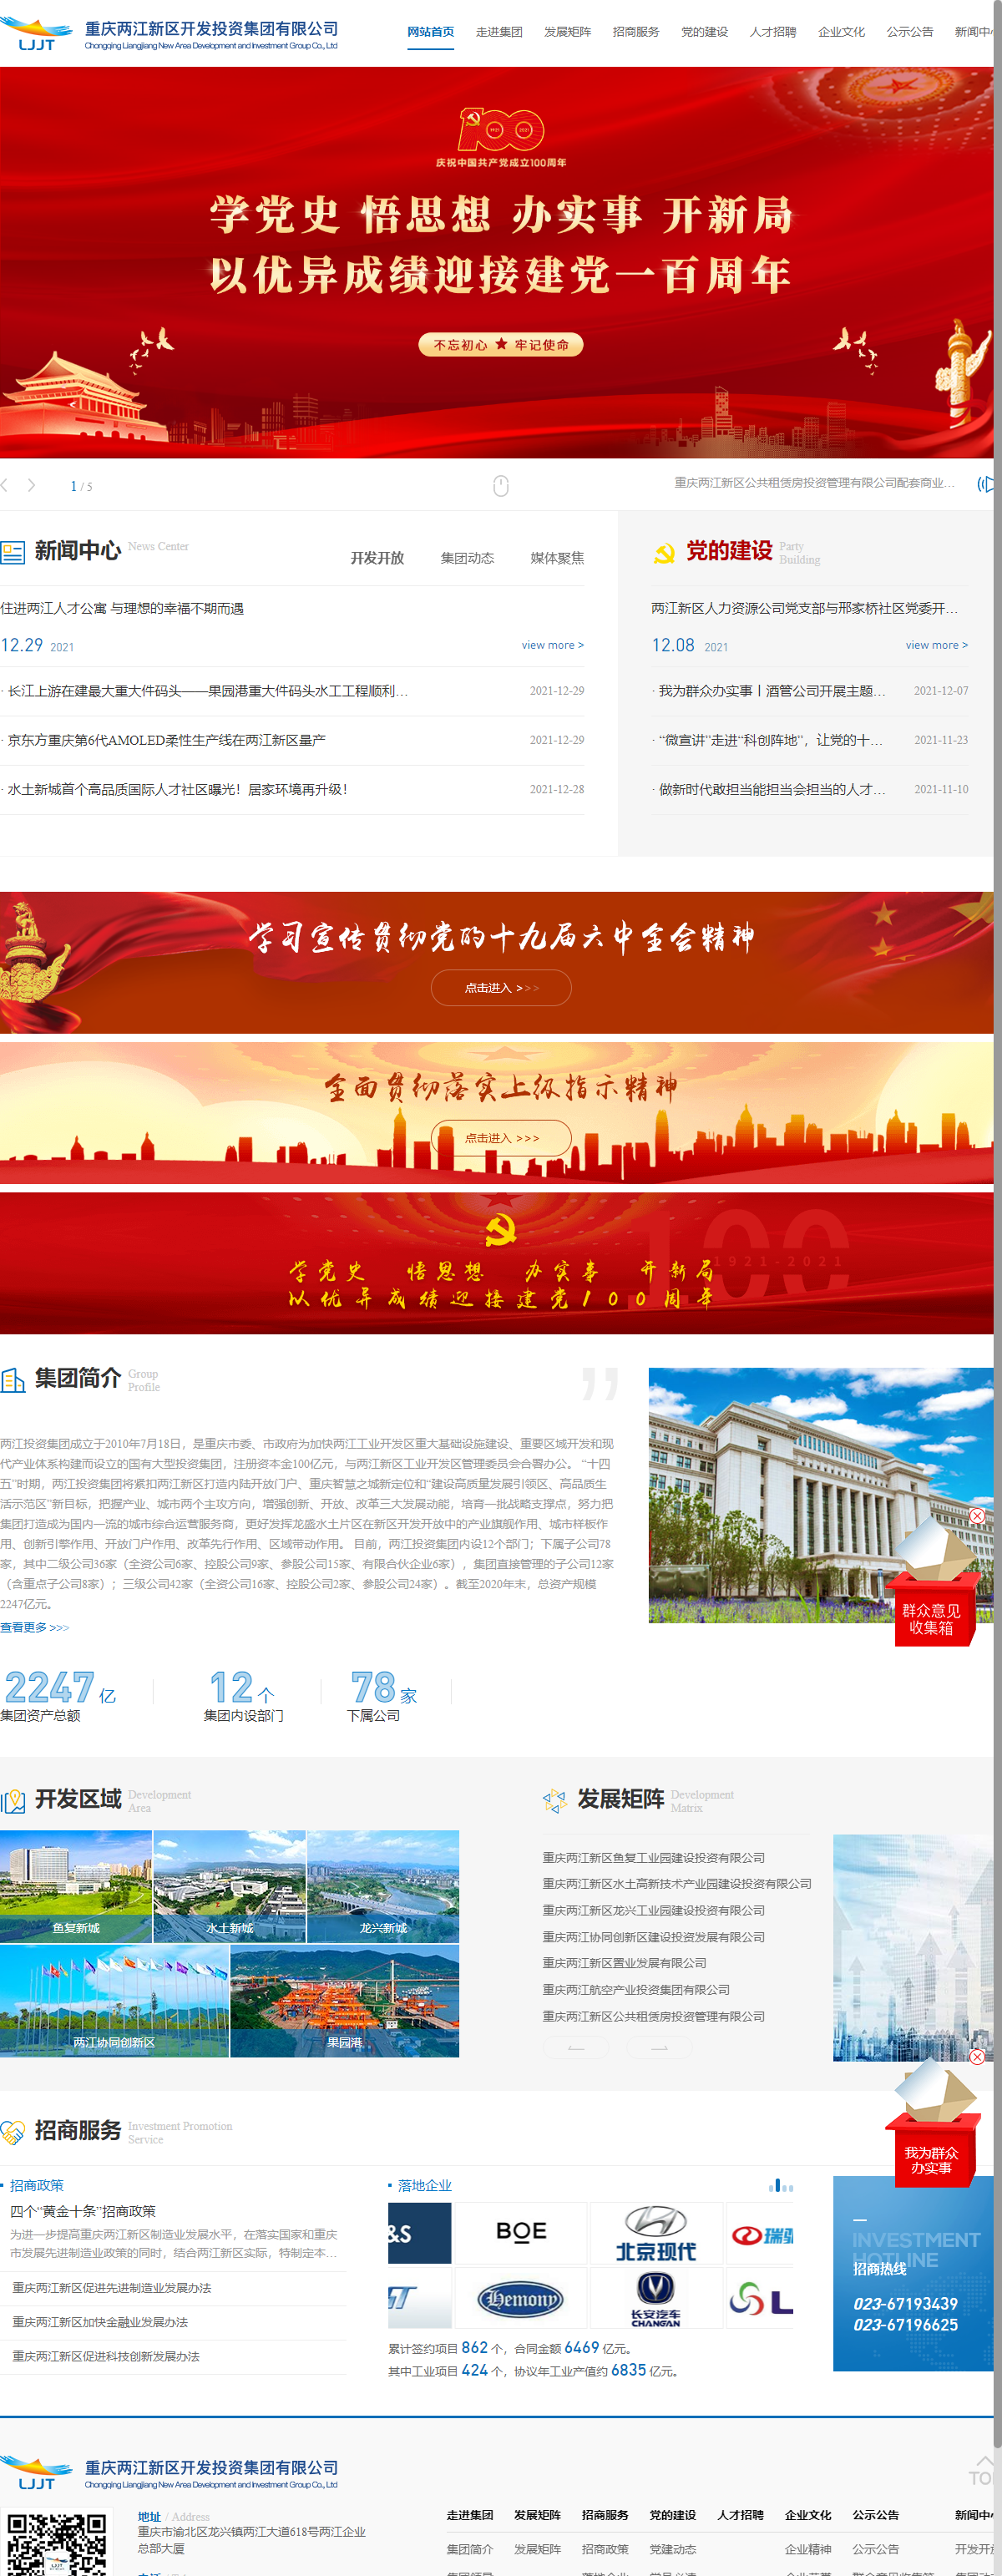 重庆两江新区开发投资集团有限公司网站案例